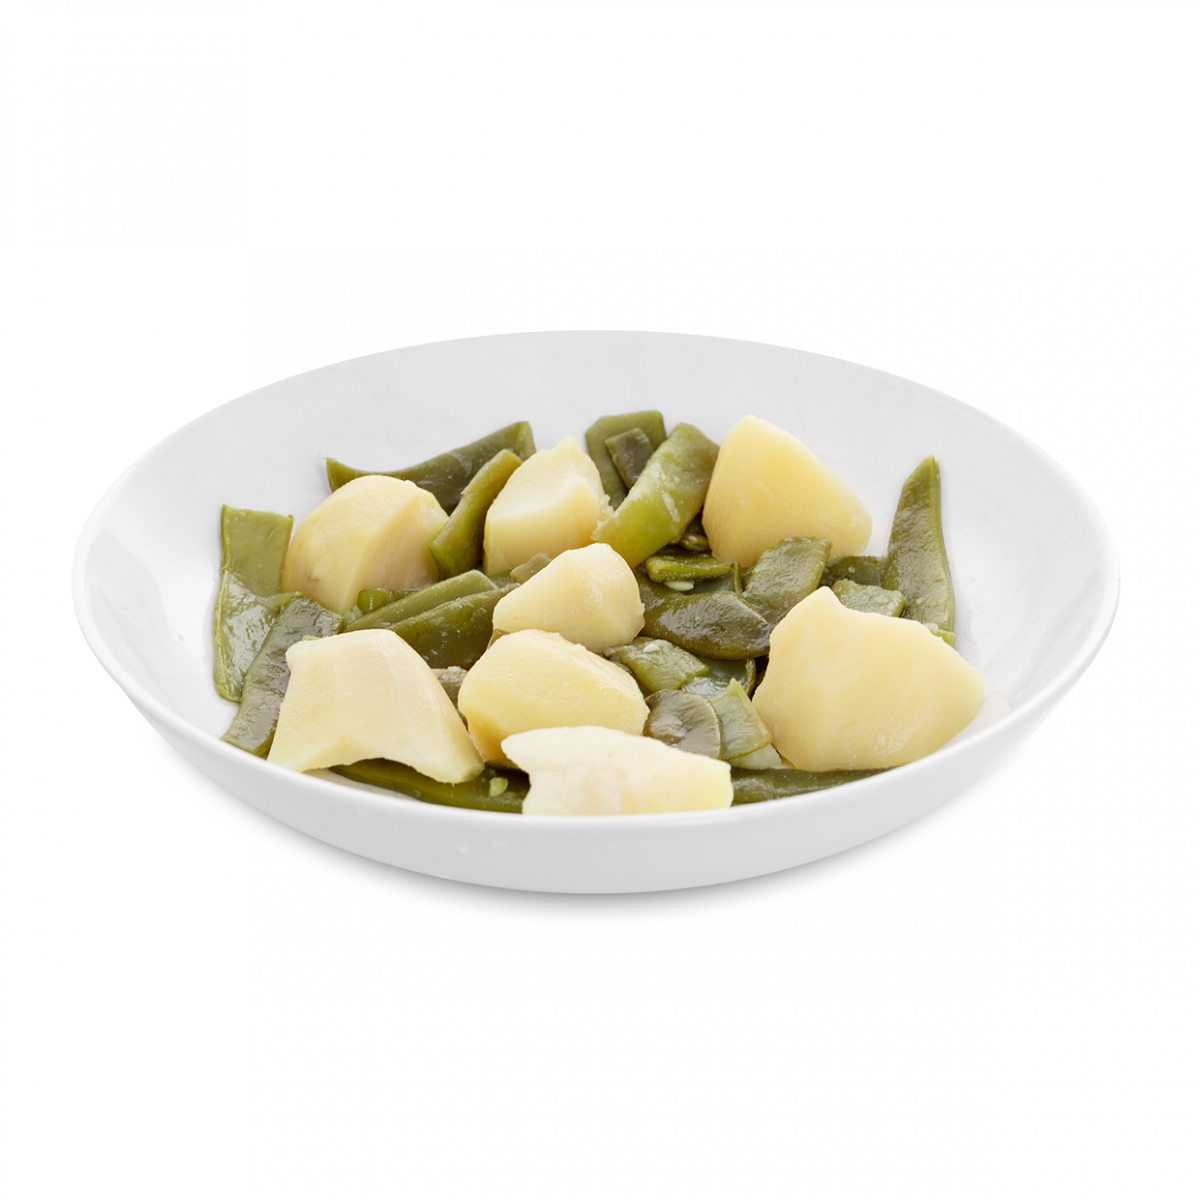 Imagen en la que se ve un plato de judías verdes con patatas